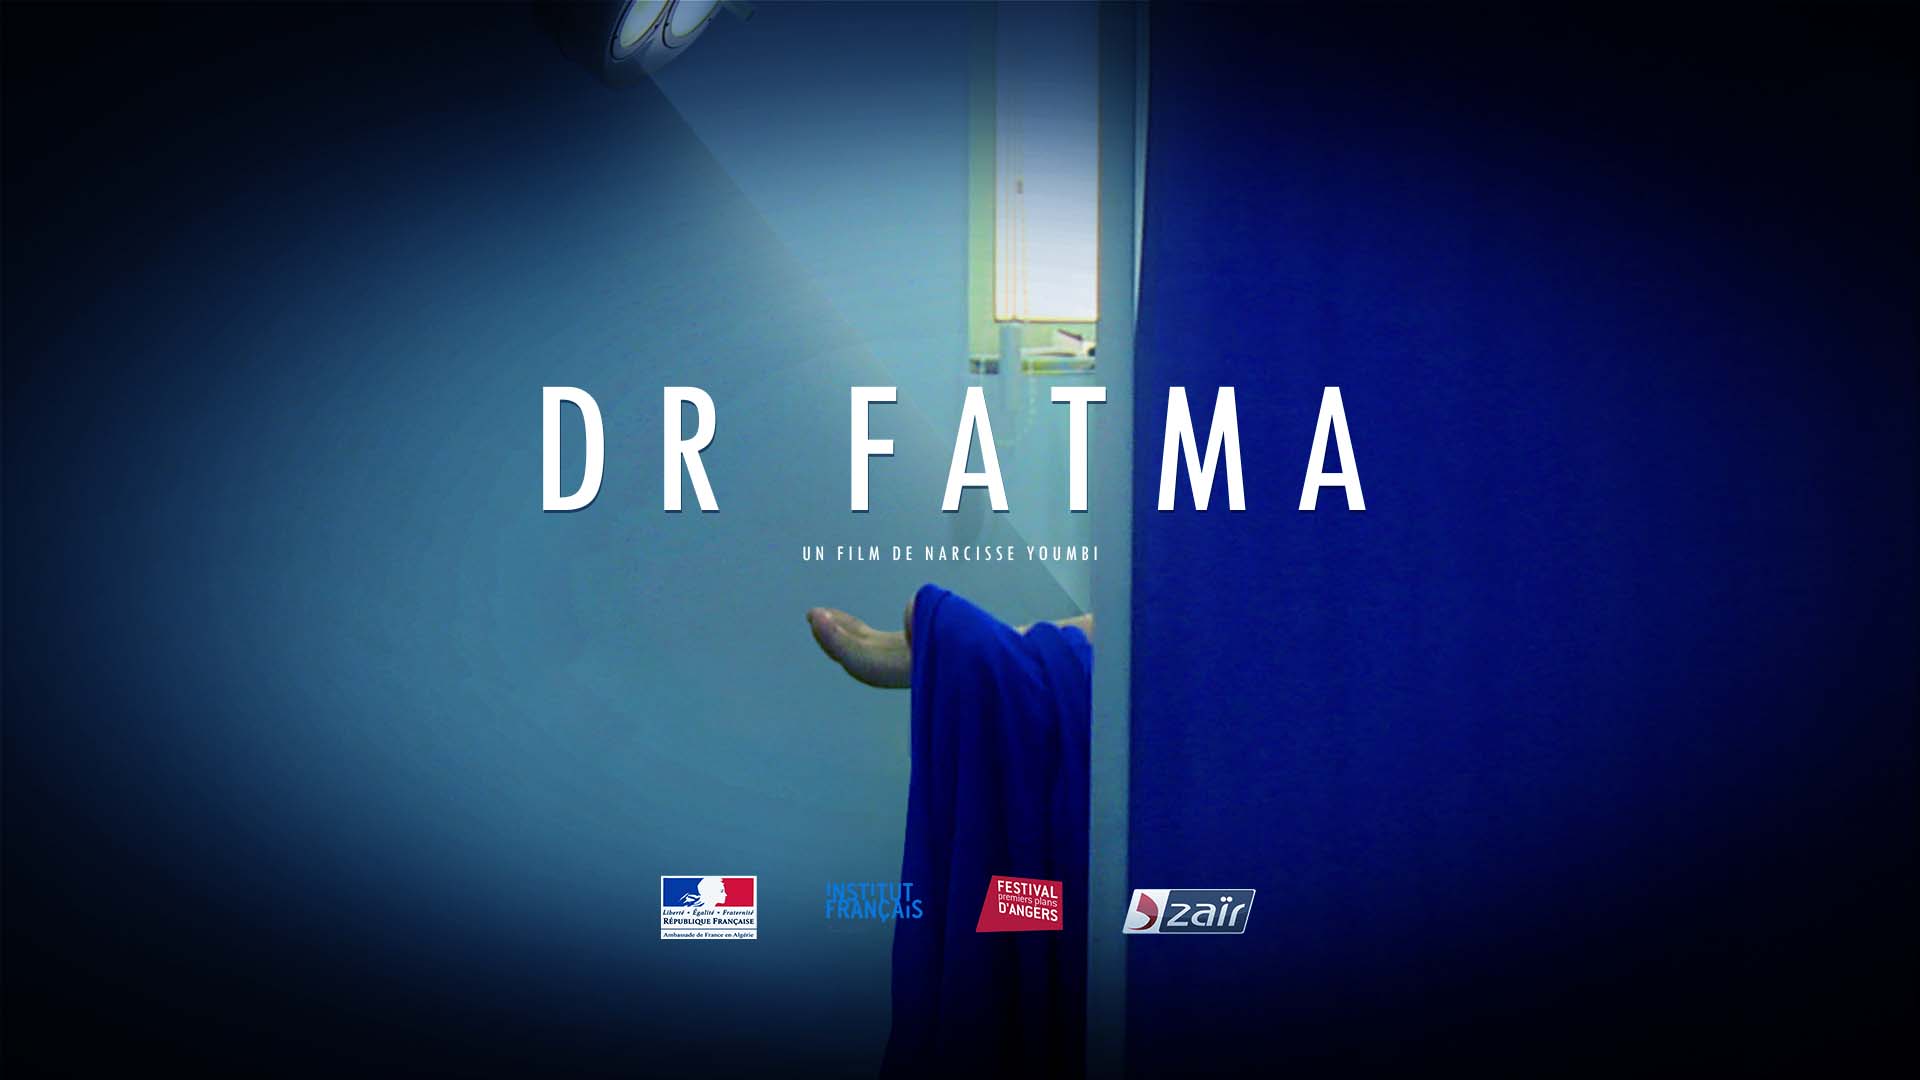 Dr Fatma